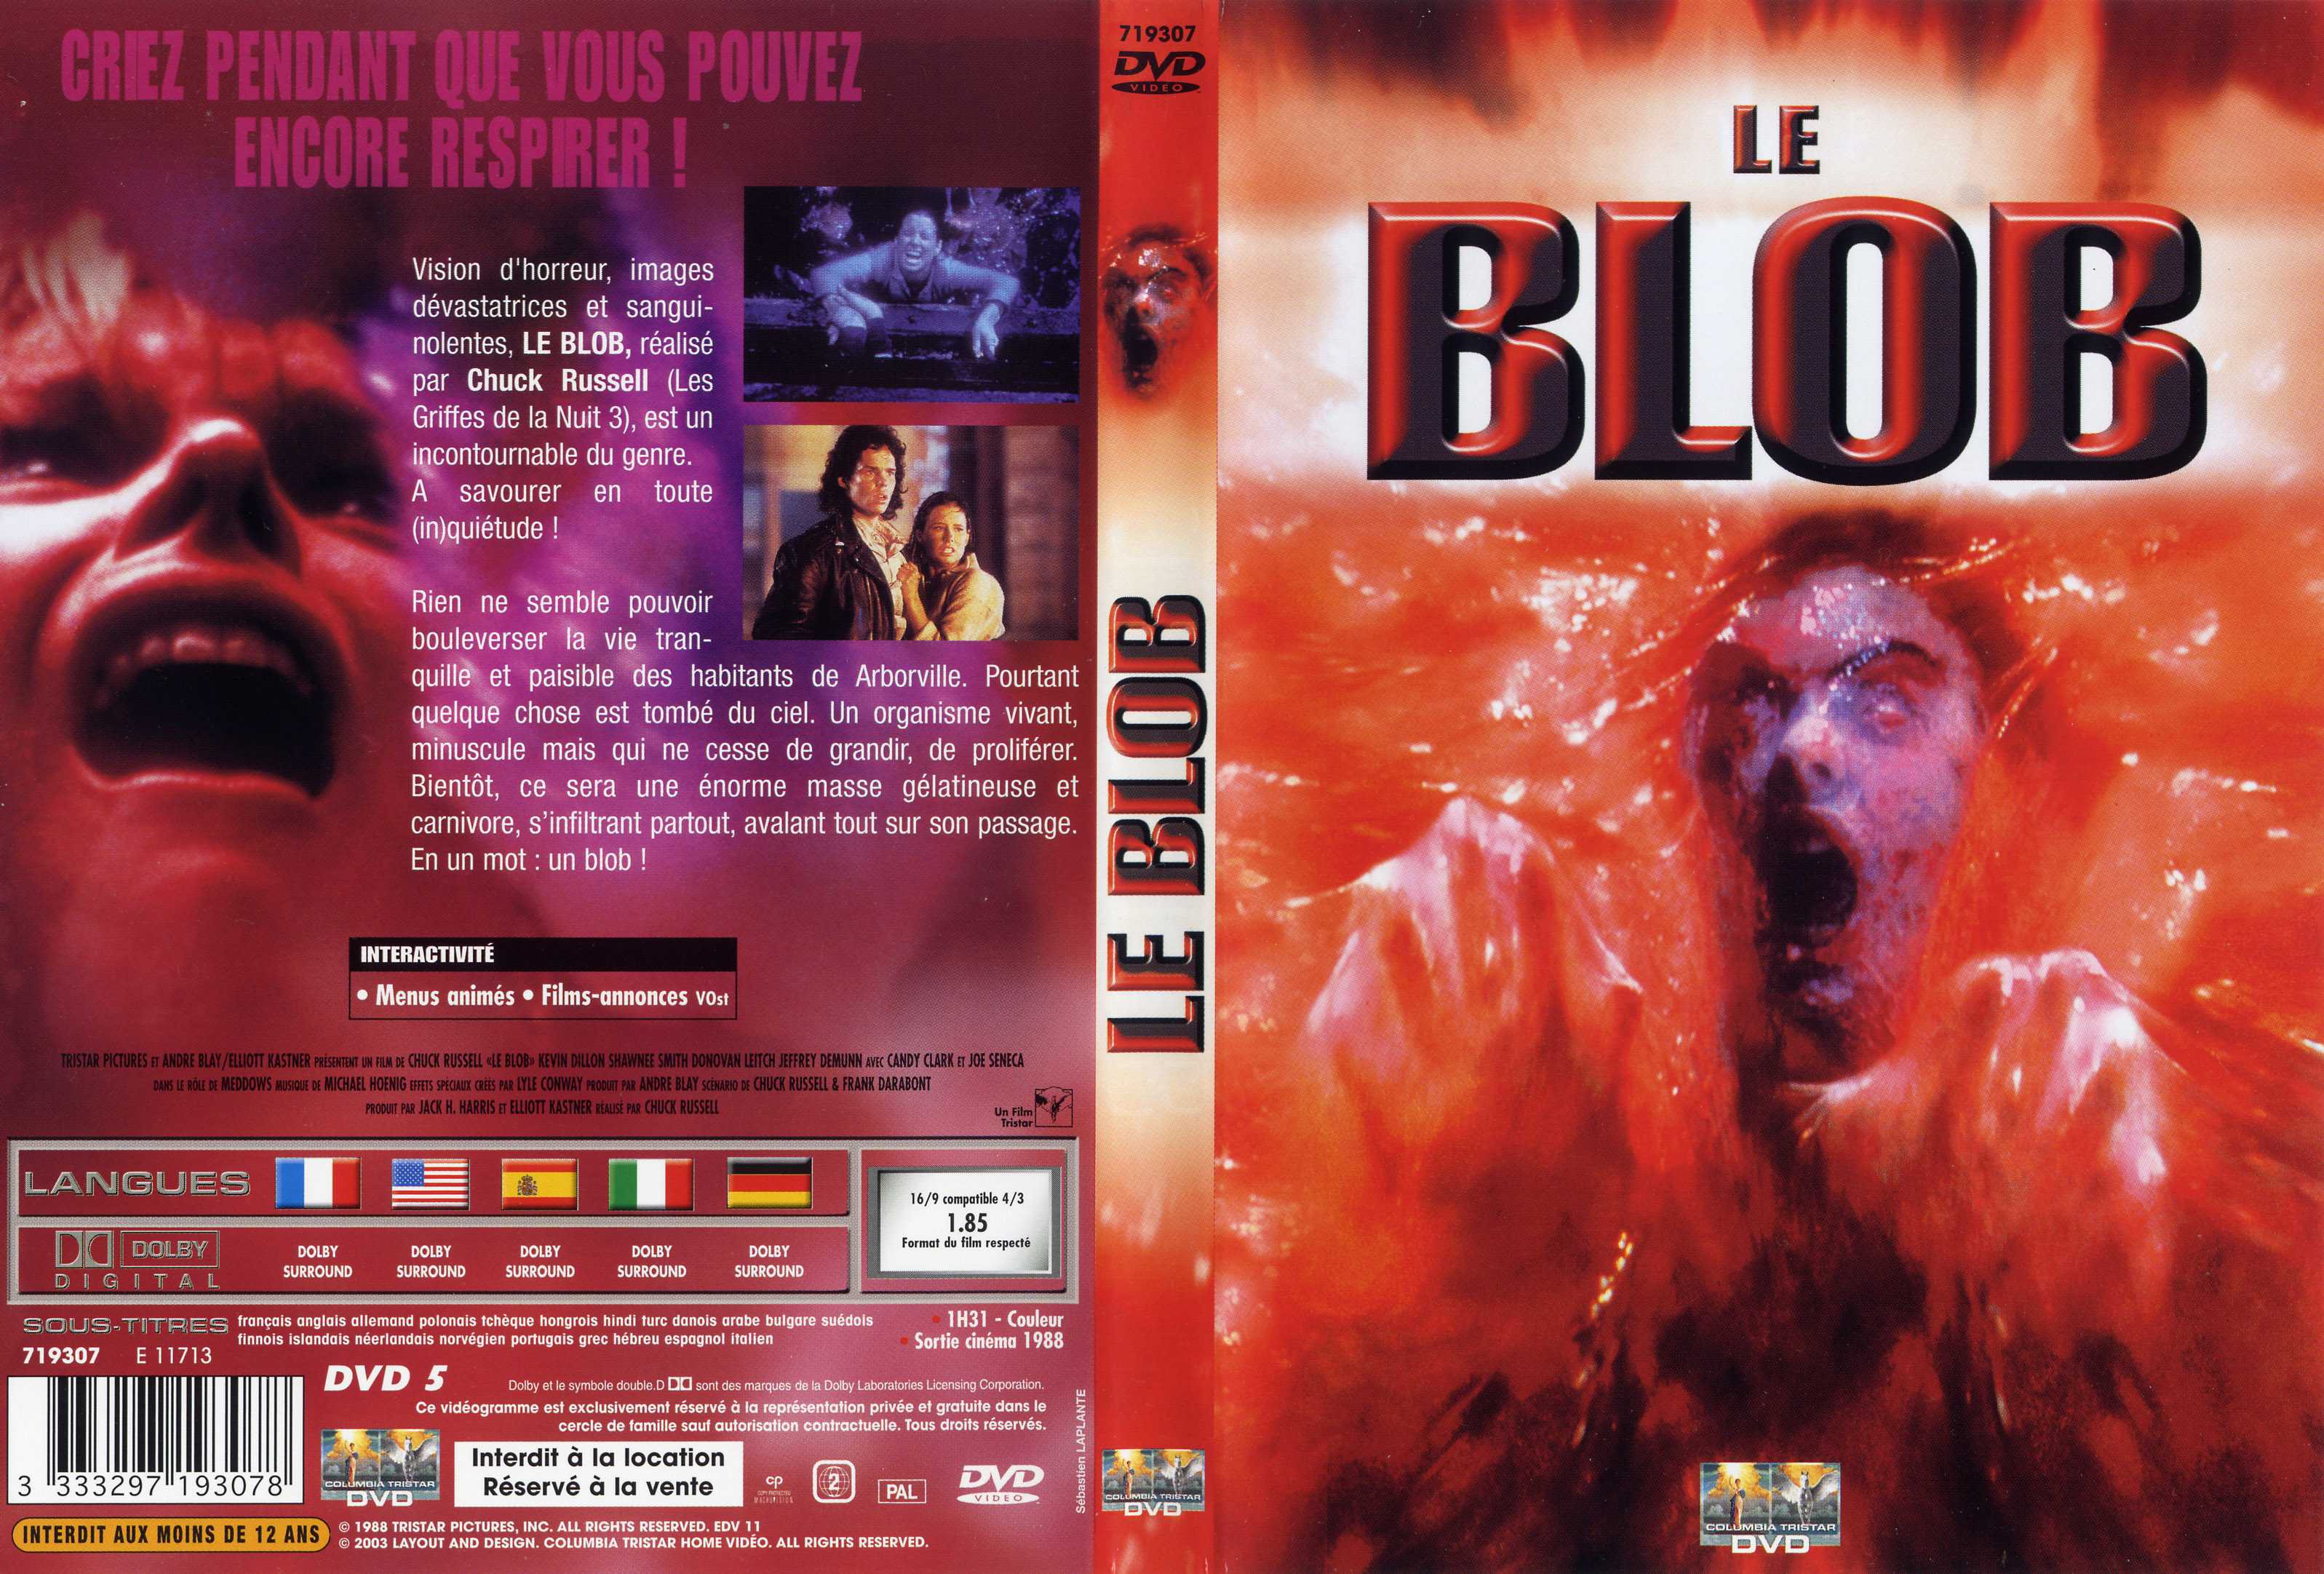 Jaquette DVD Le blob